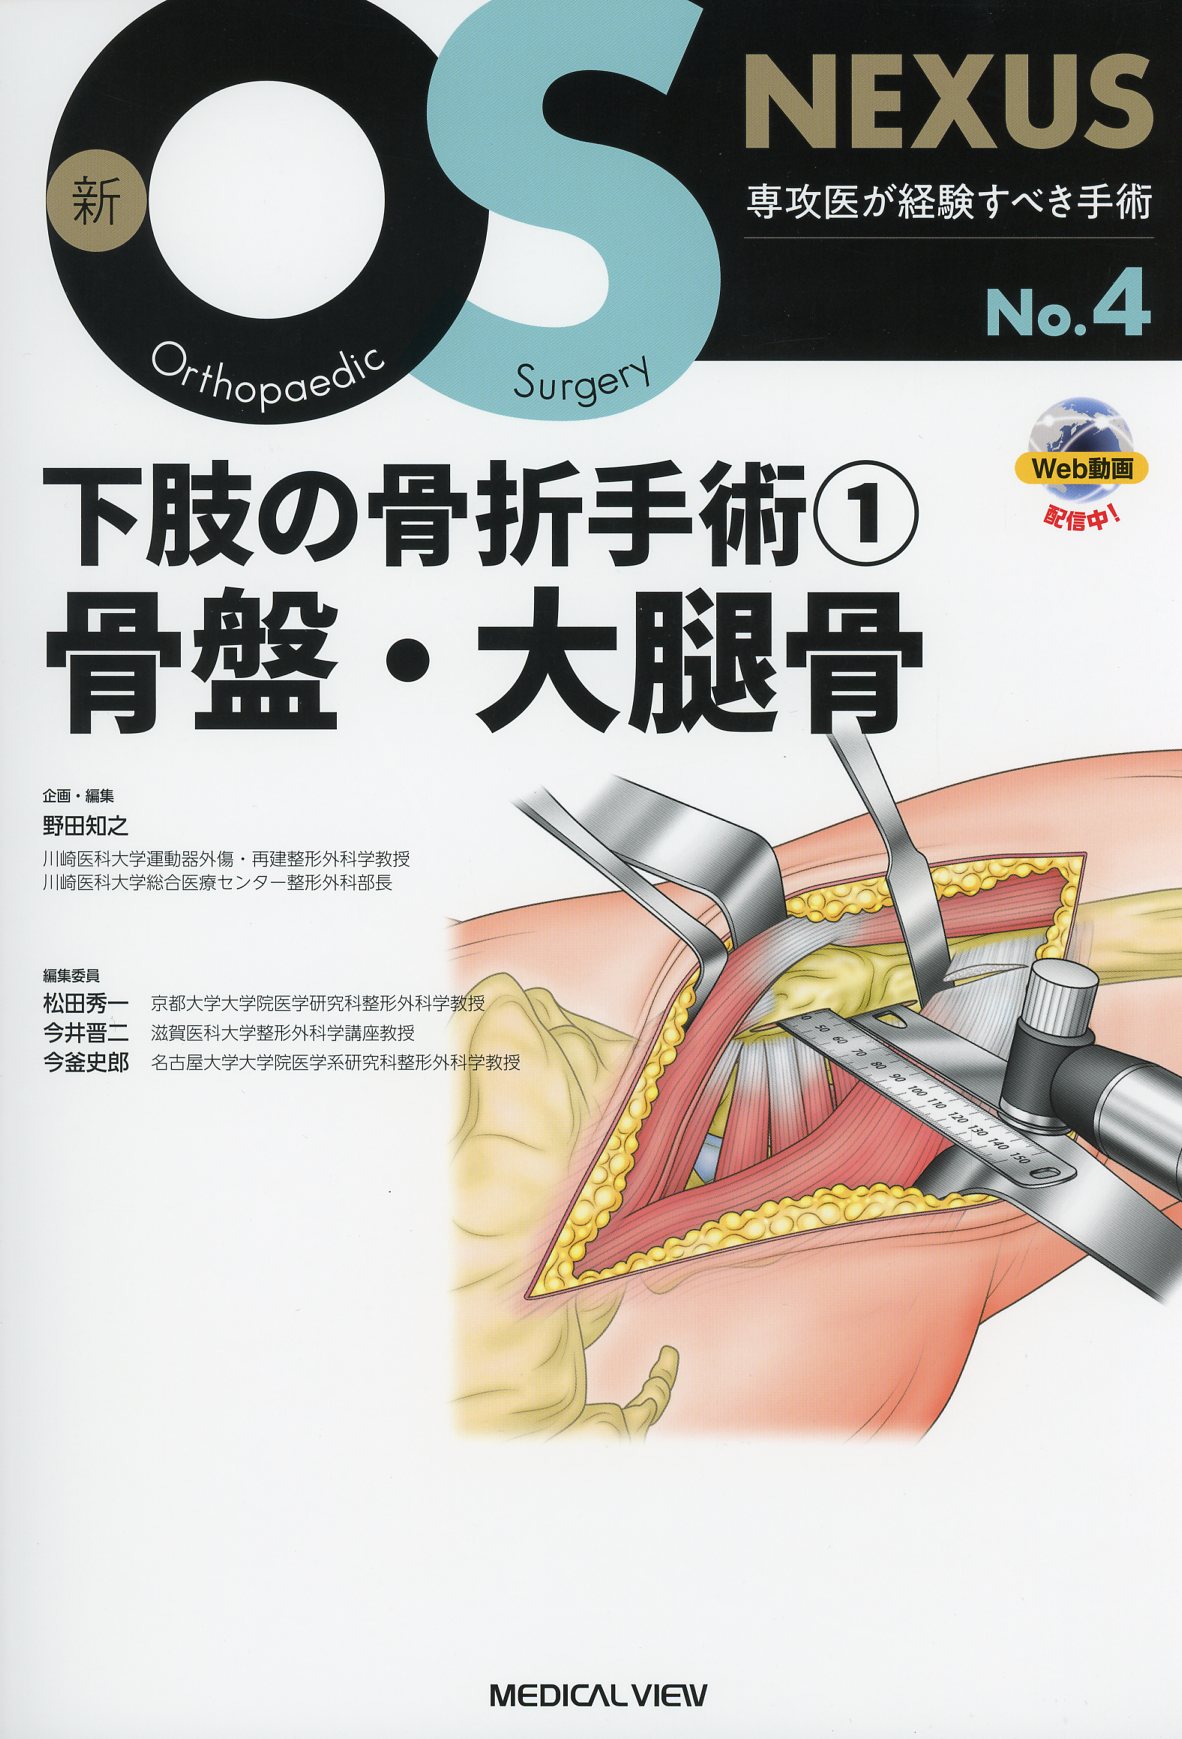 新OS NEXUS　No.4　下肢の骨折手術(1)　骨盤・大腿骨